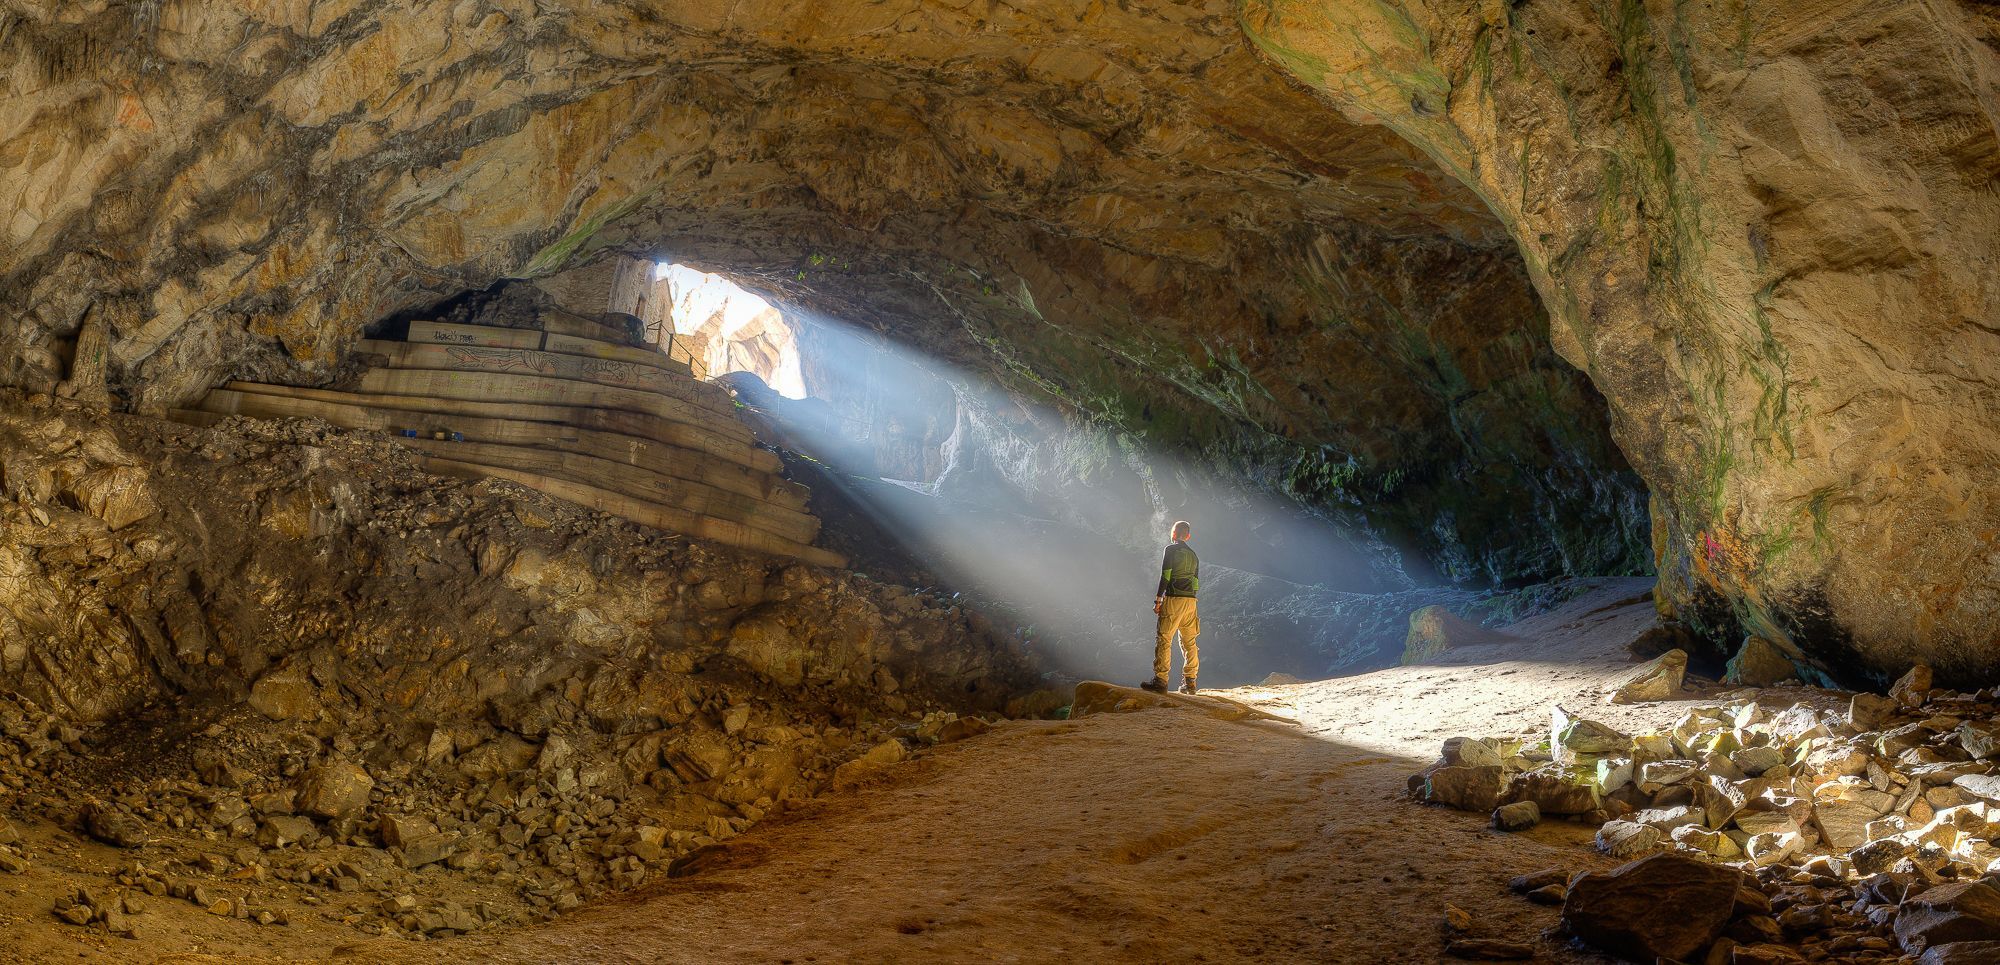 Σπηλιά του Νταβέλη – Ένα διαχρονικό μυστήριο!